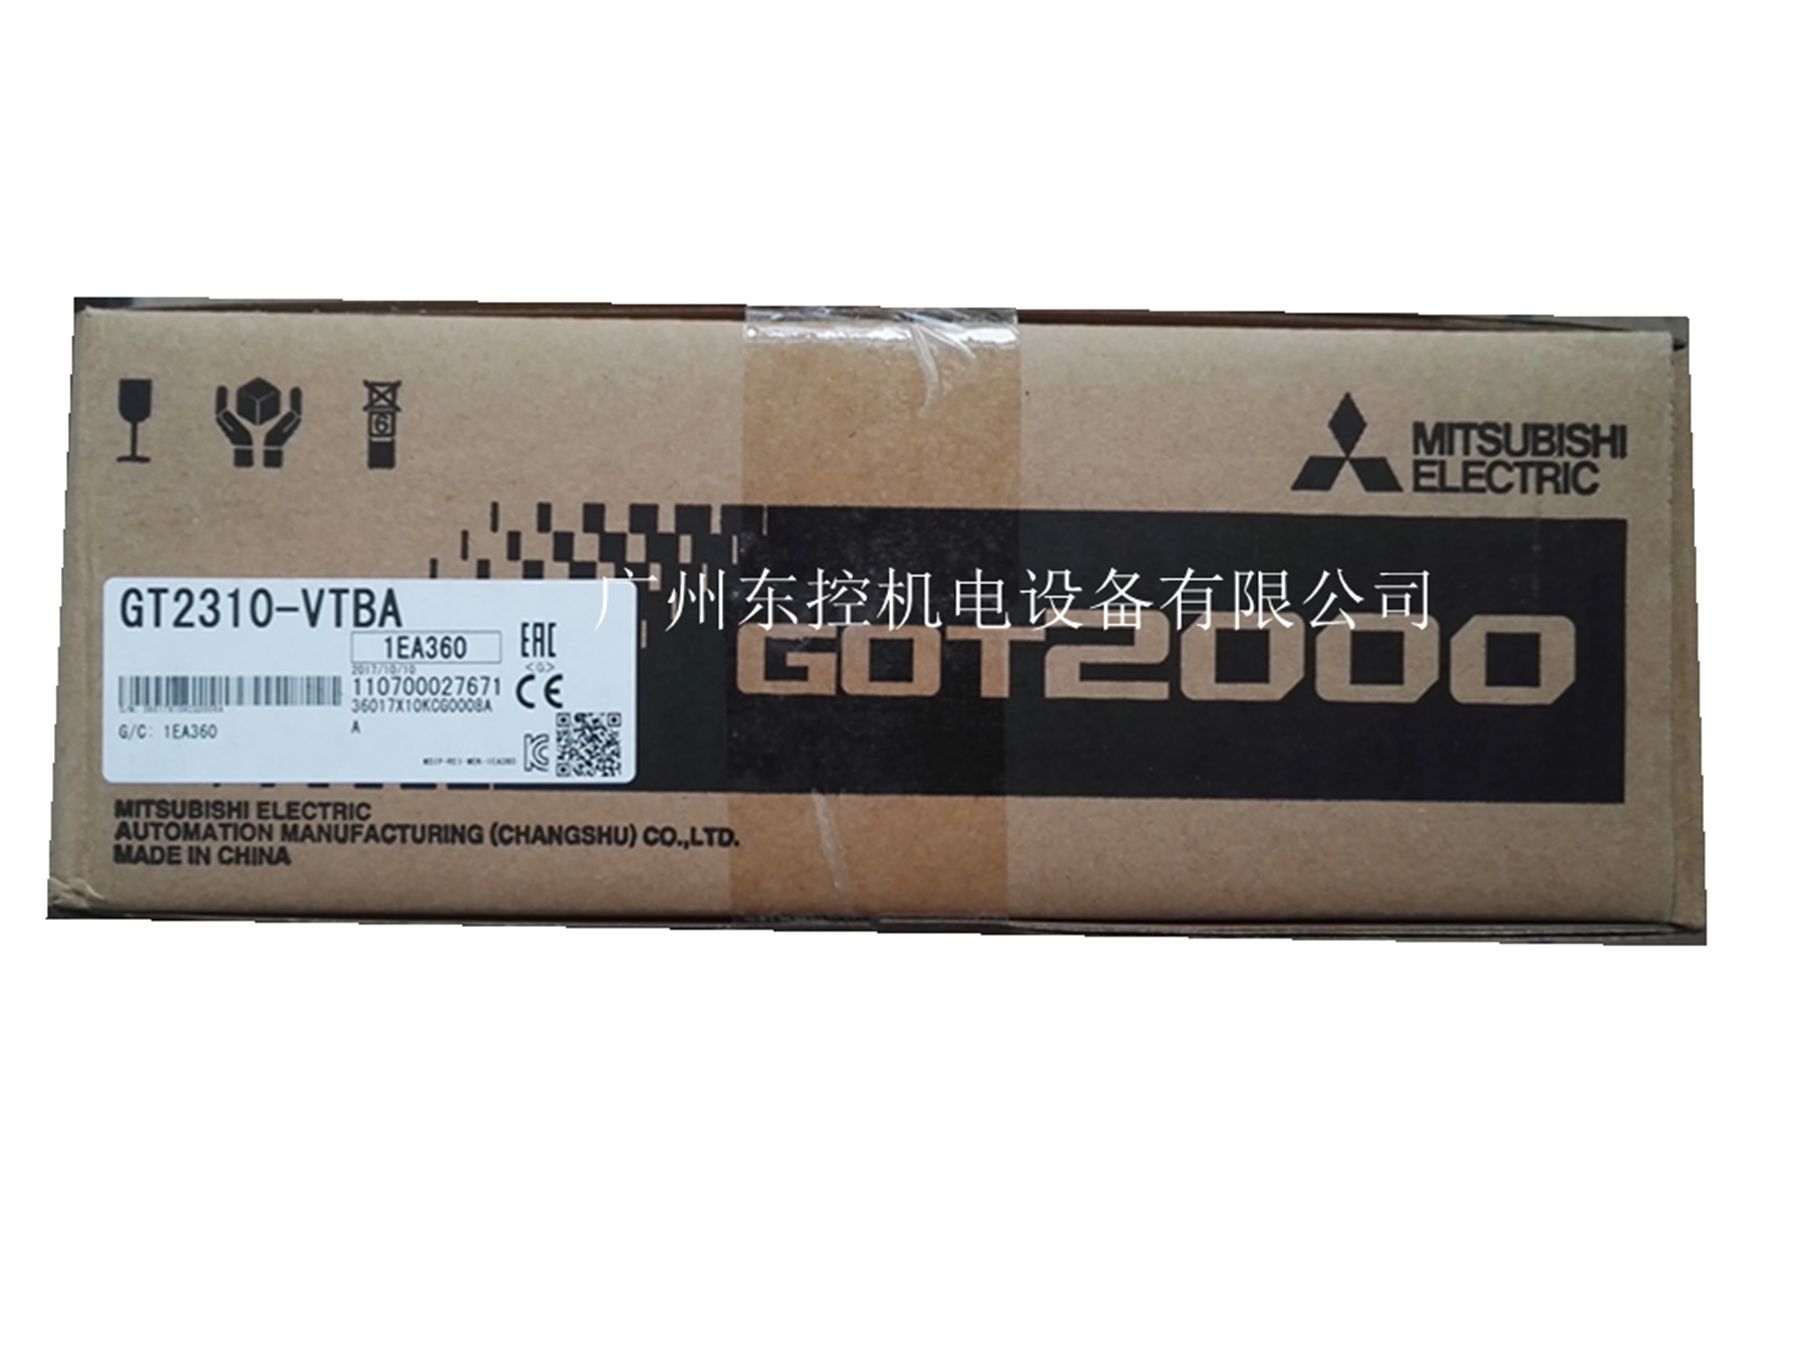 GT2310-VTBAGT2310-VTBD10.4紥 